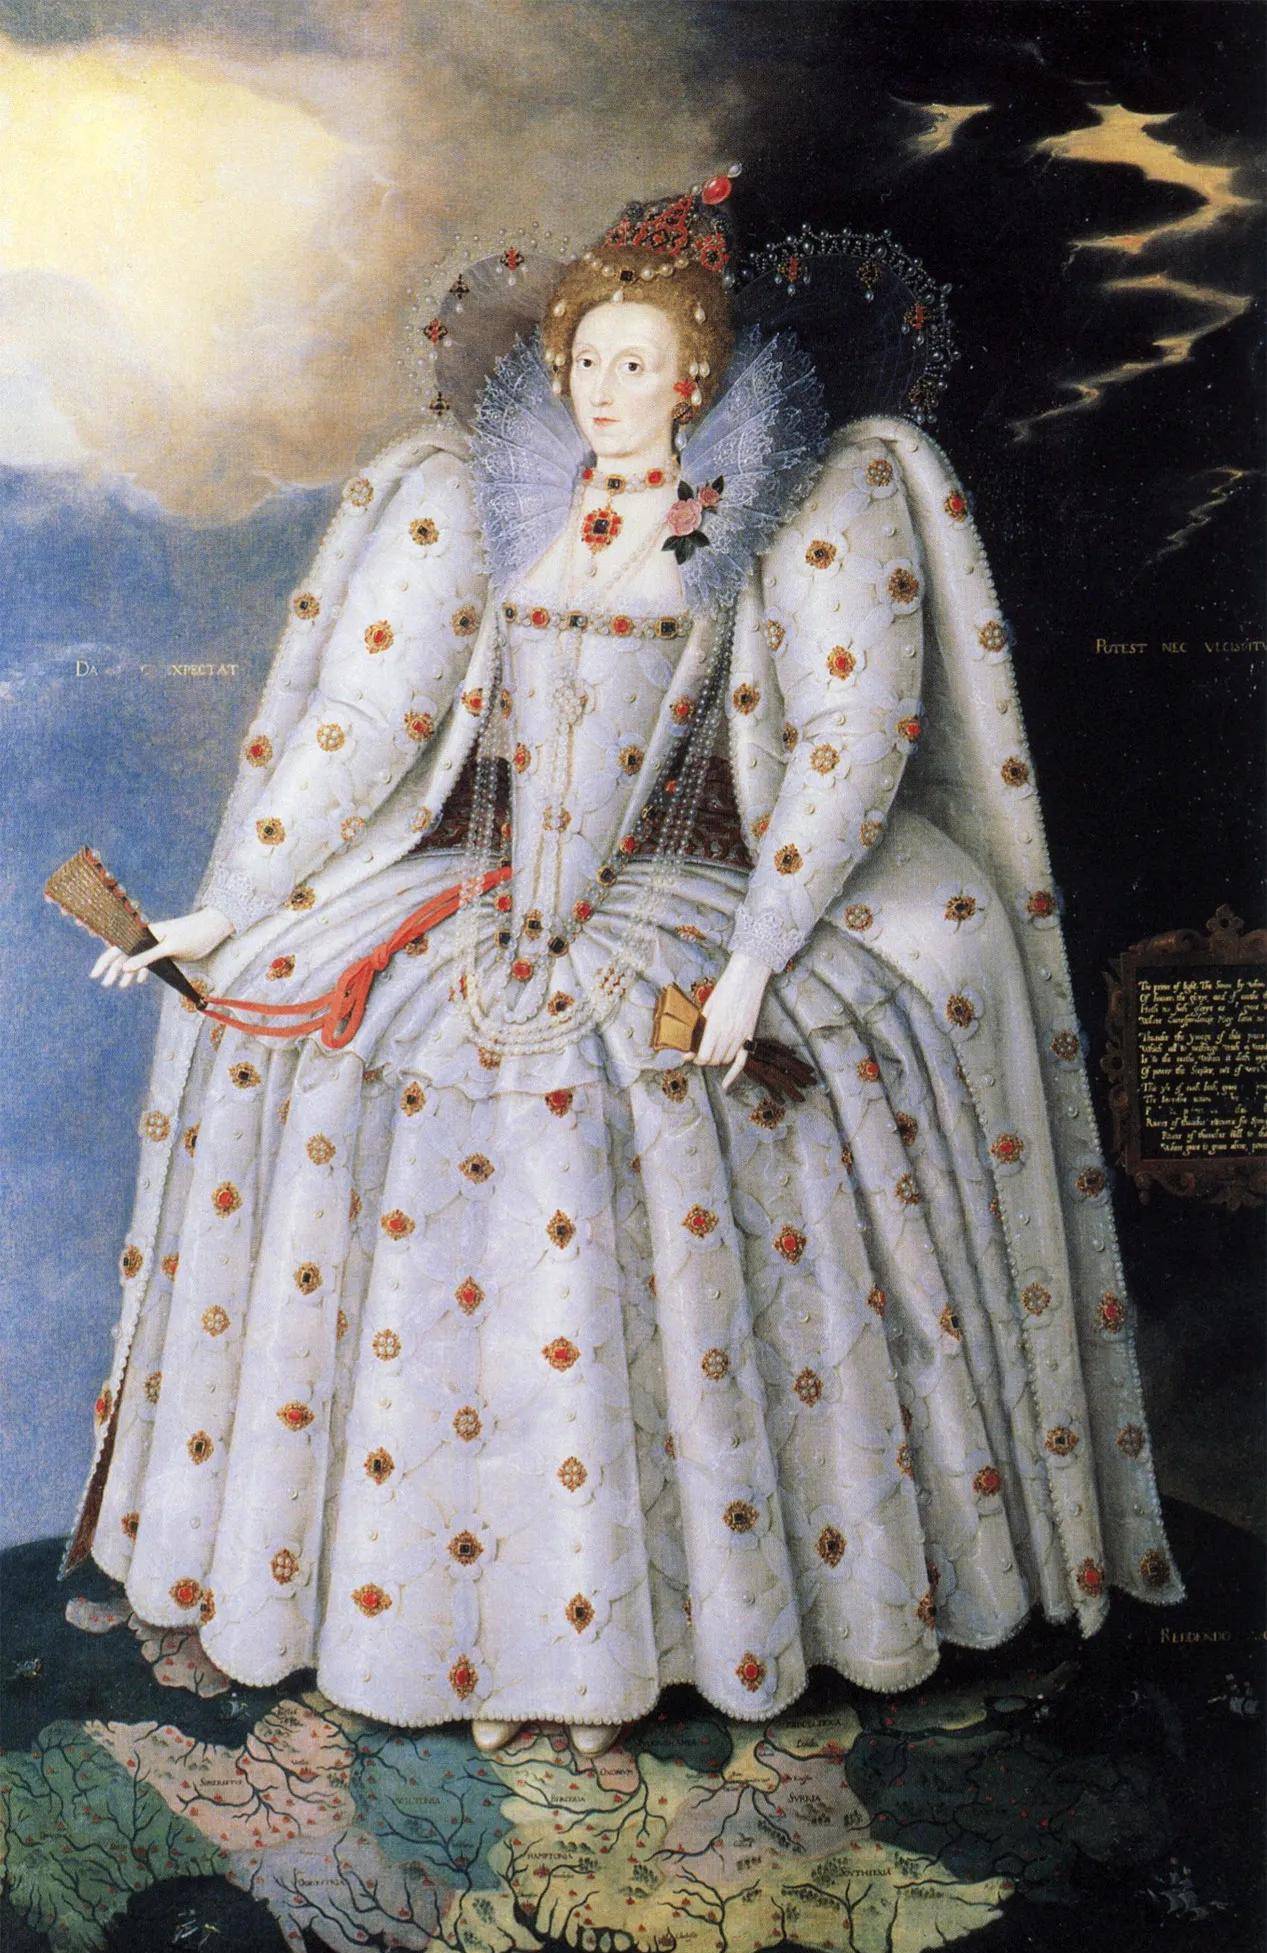 原创英国历史上最伟大的君主伊丽莎白一世女王